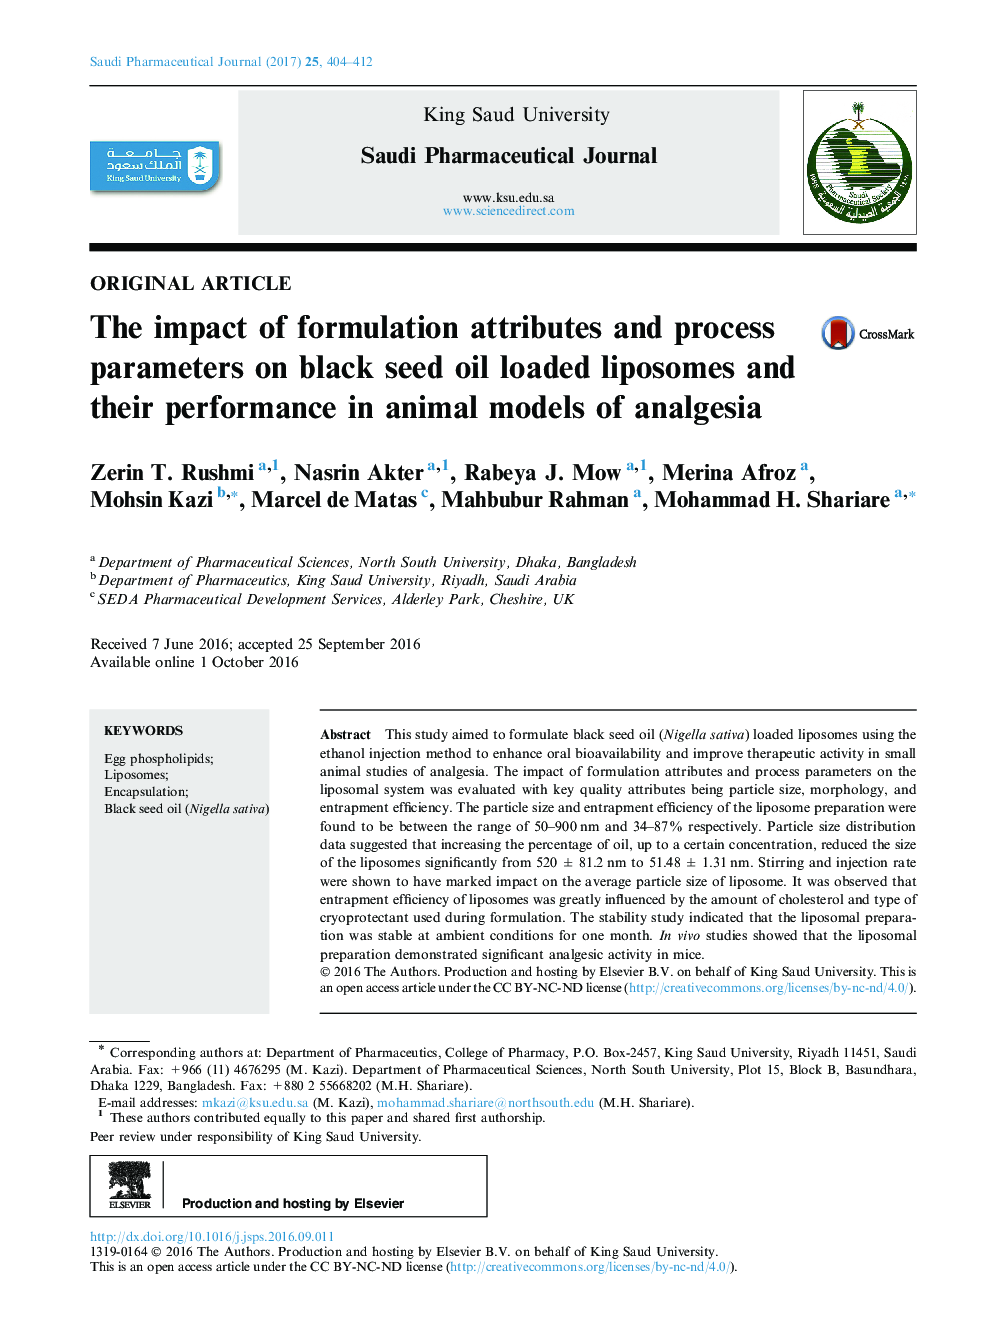 تأثیر پارامترهای فرموله سازی و پارامترهای فرایند بر روی لیپوزوم های باردهی روغن سیاه دانه و عملکرد آنها در مدل های حیوانی بیهوشی 